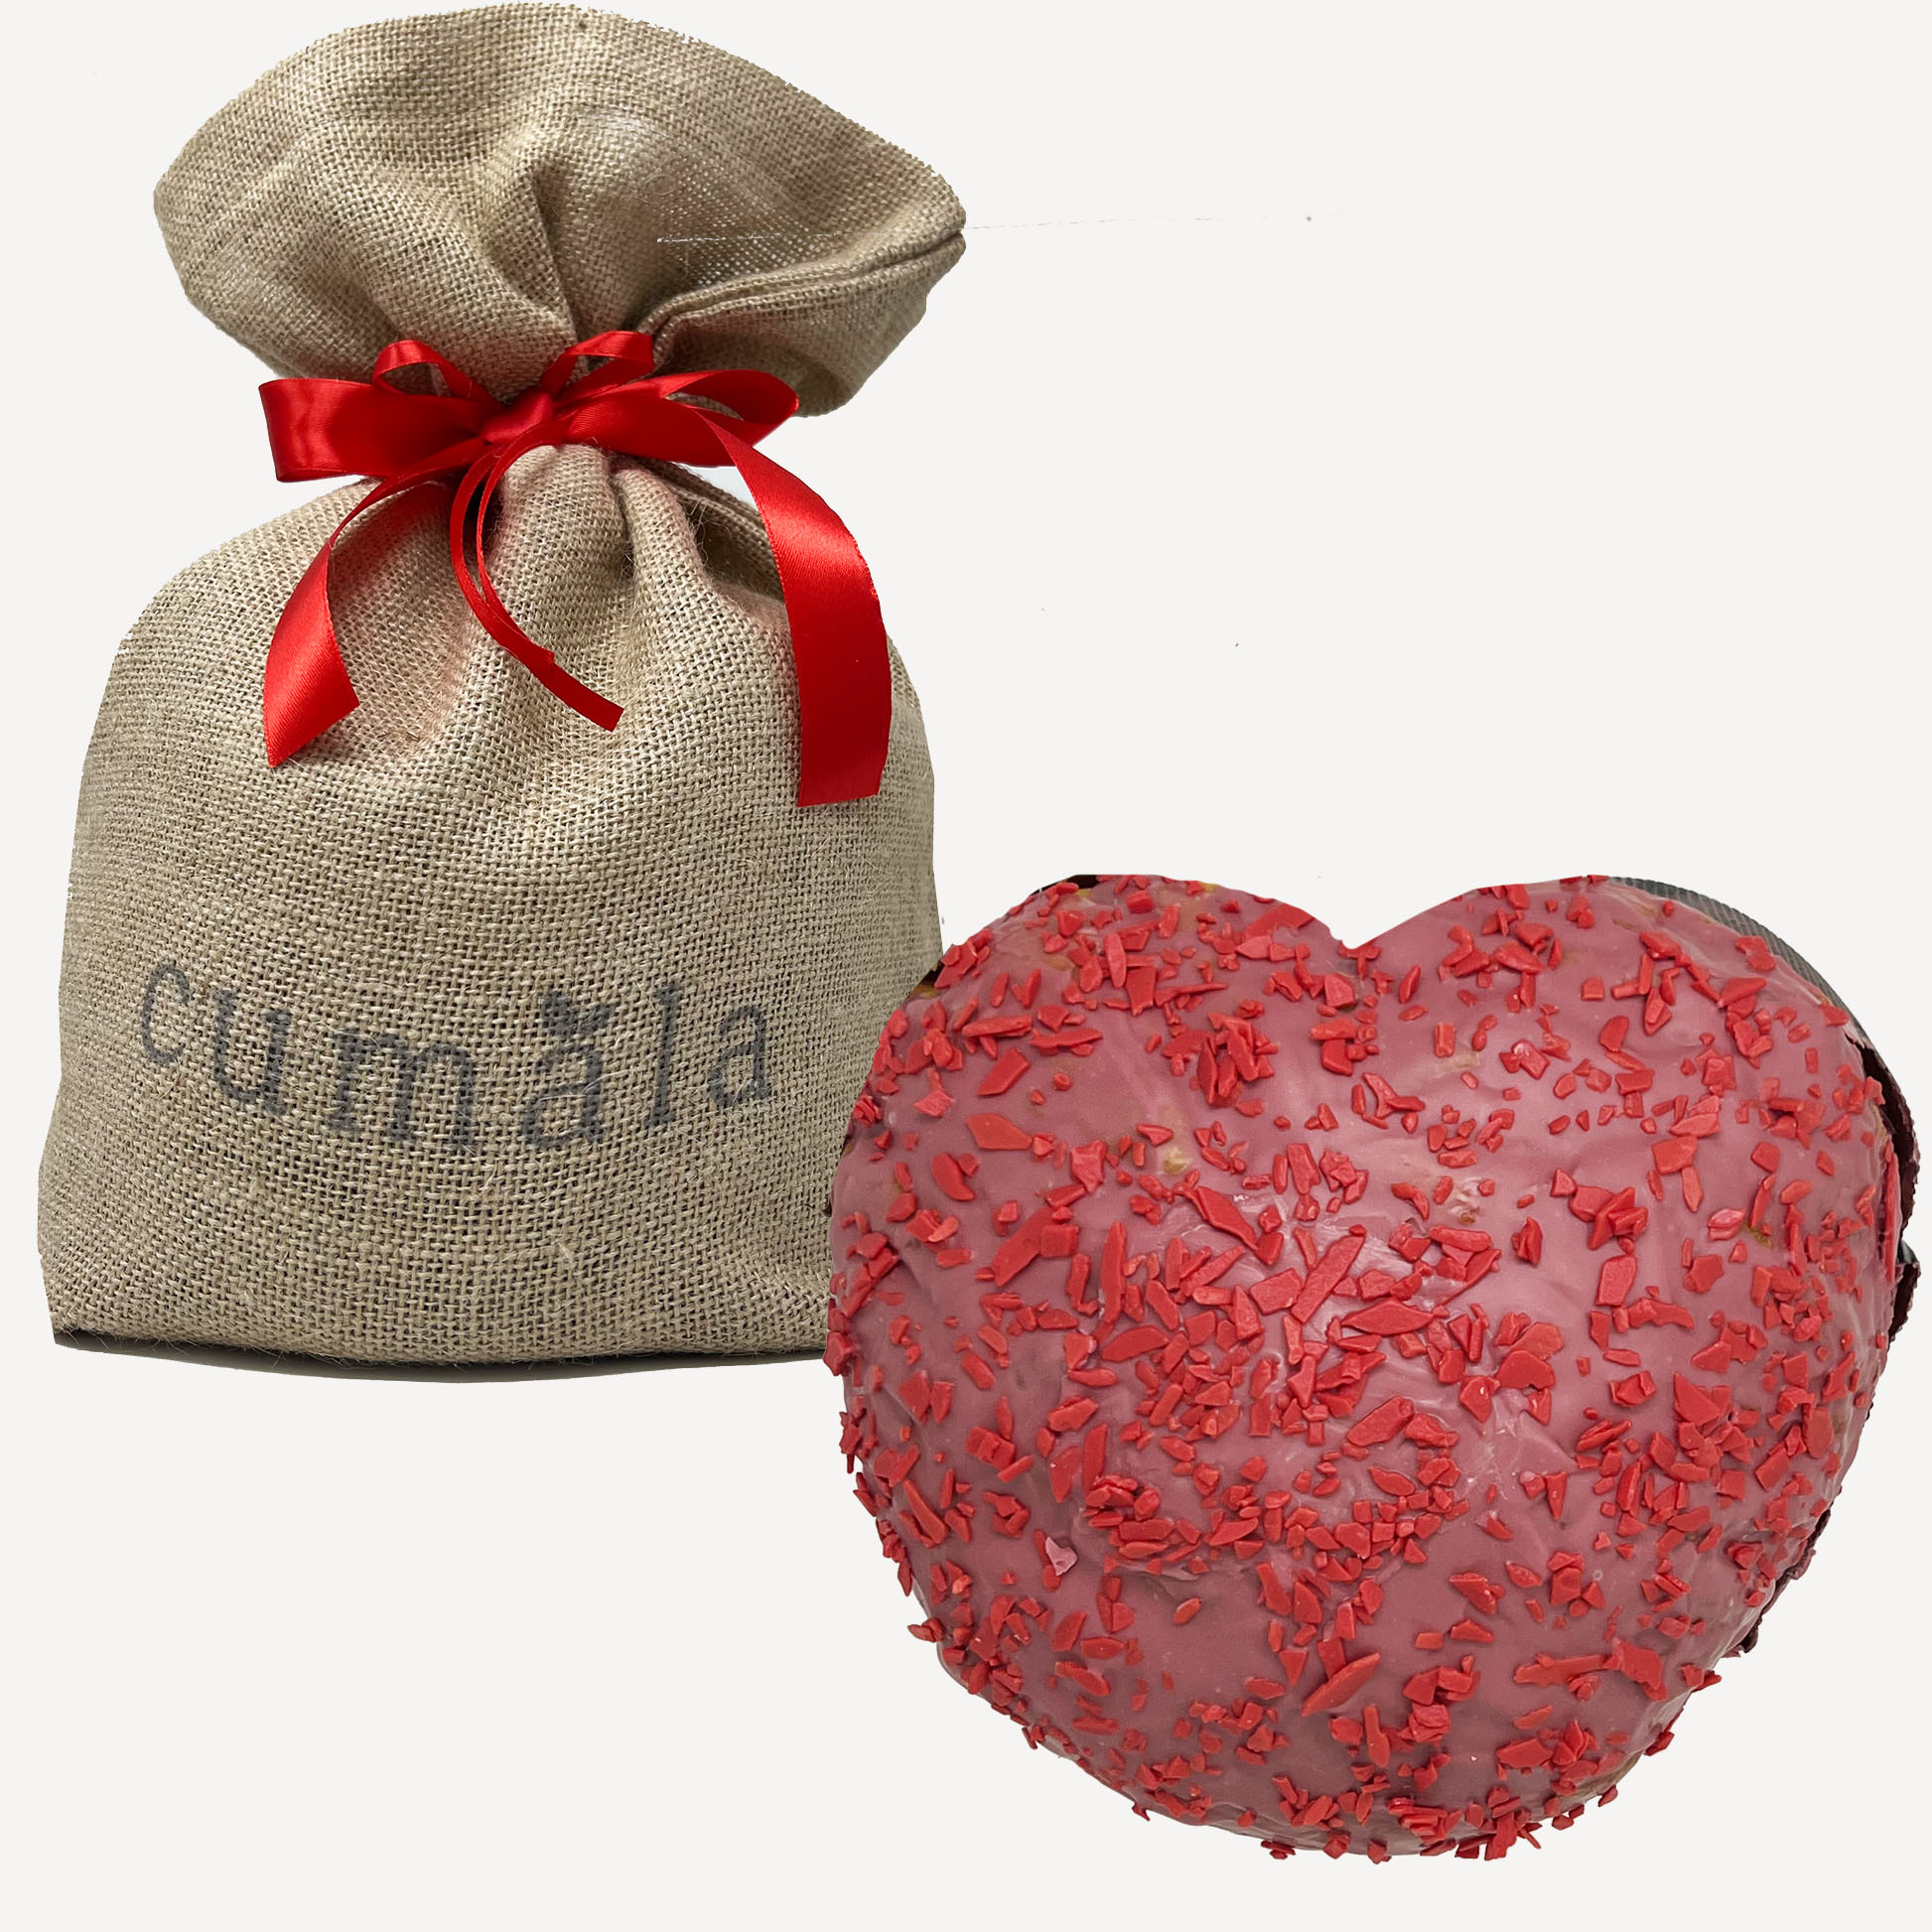 Cuore Dolce di San Valentino al Cioccolato Ruby e ai Frutti di Bosco - Cumala